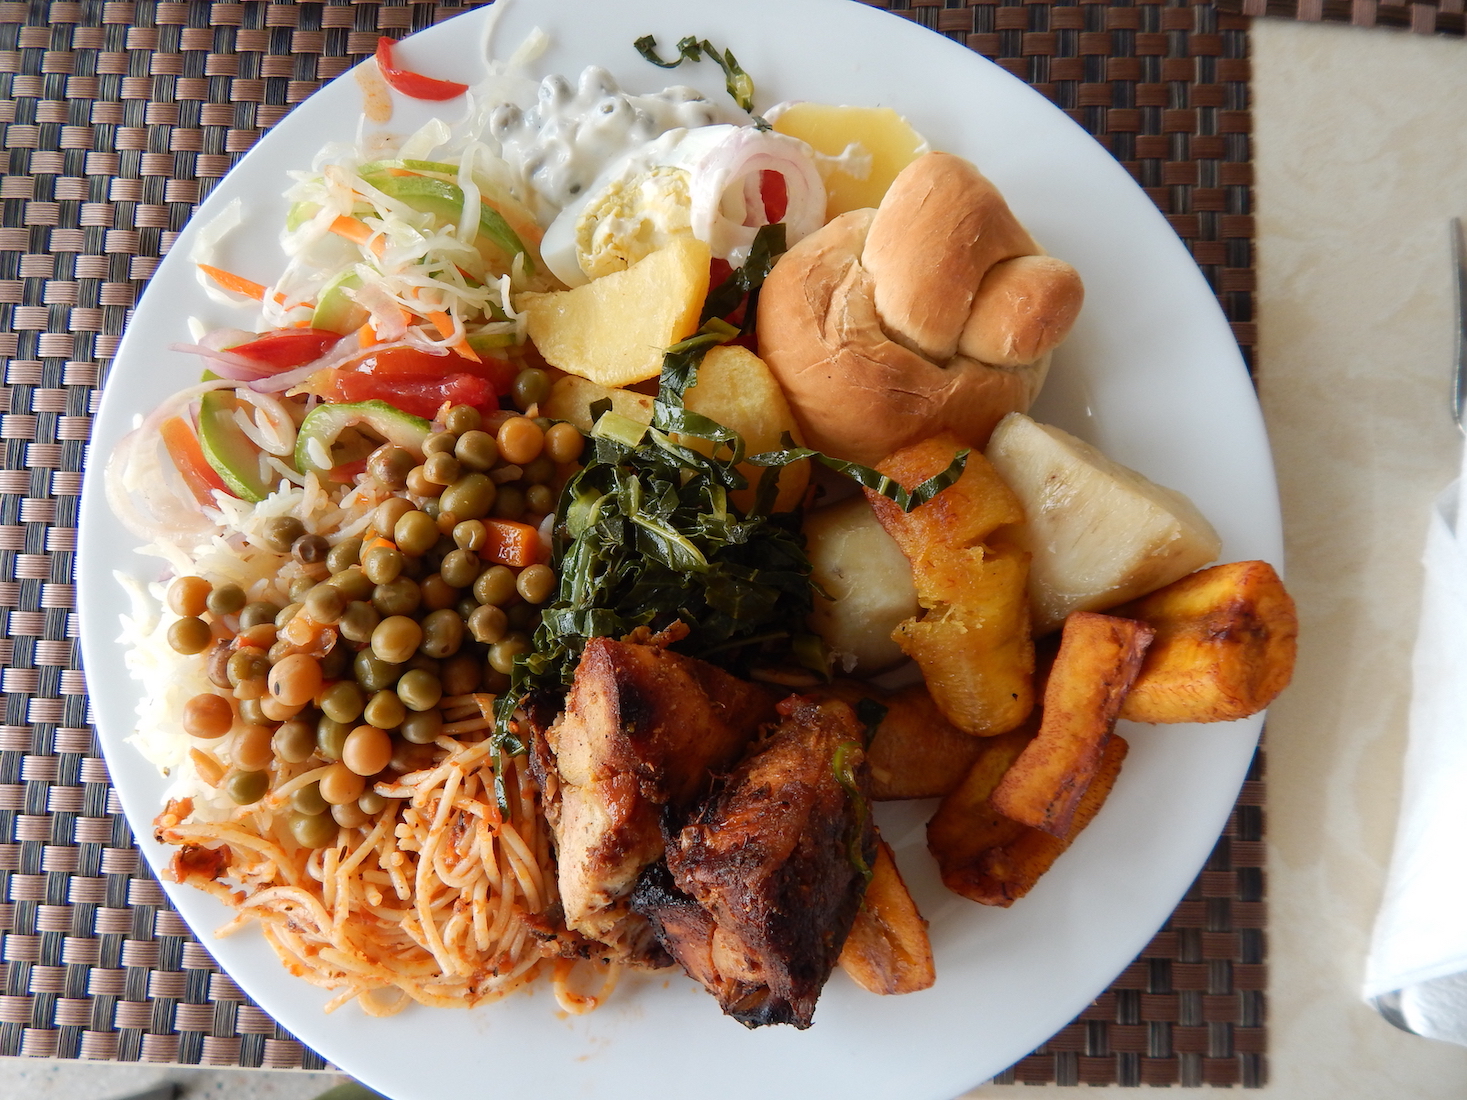 Food in Uganda